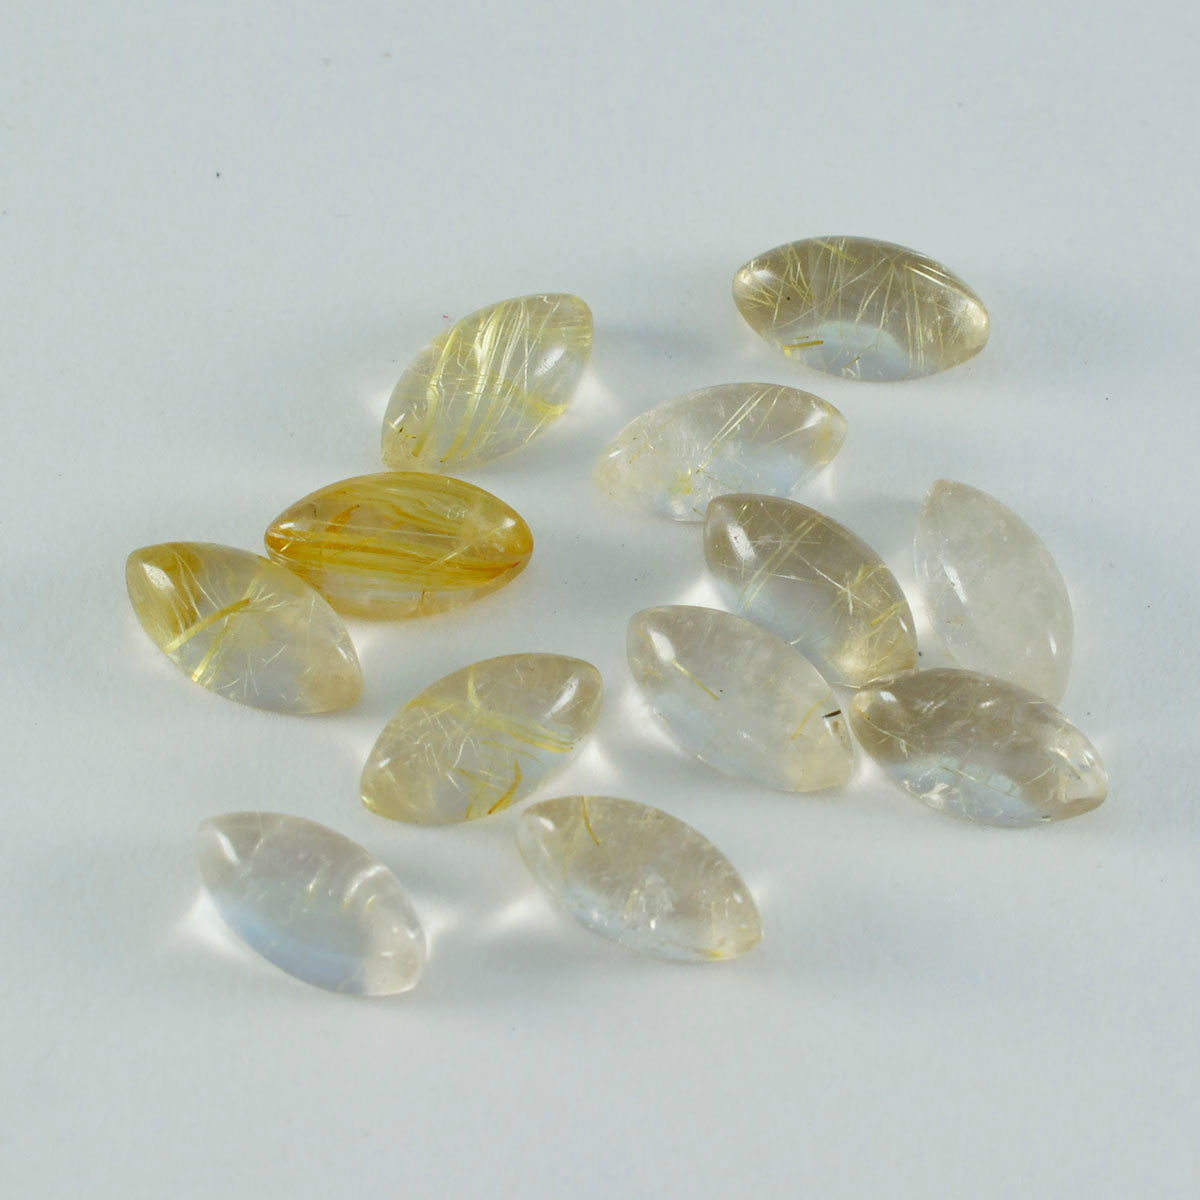 Riyogems – cabochon de quartz multi-rutile, 4x8mm, forme marquise, qualité a1, pierres précieuses en vrac, 1 pièce